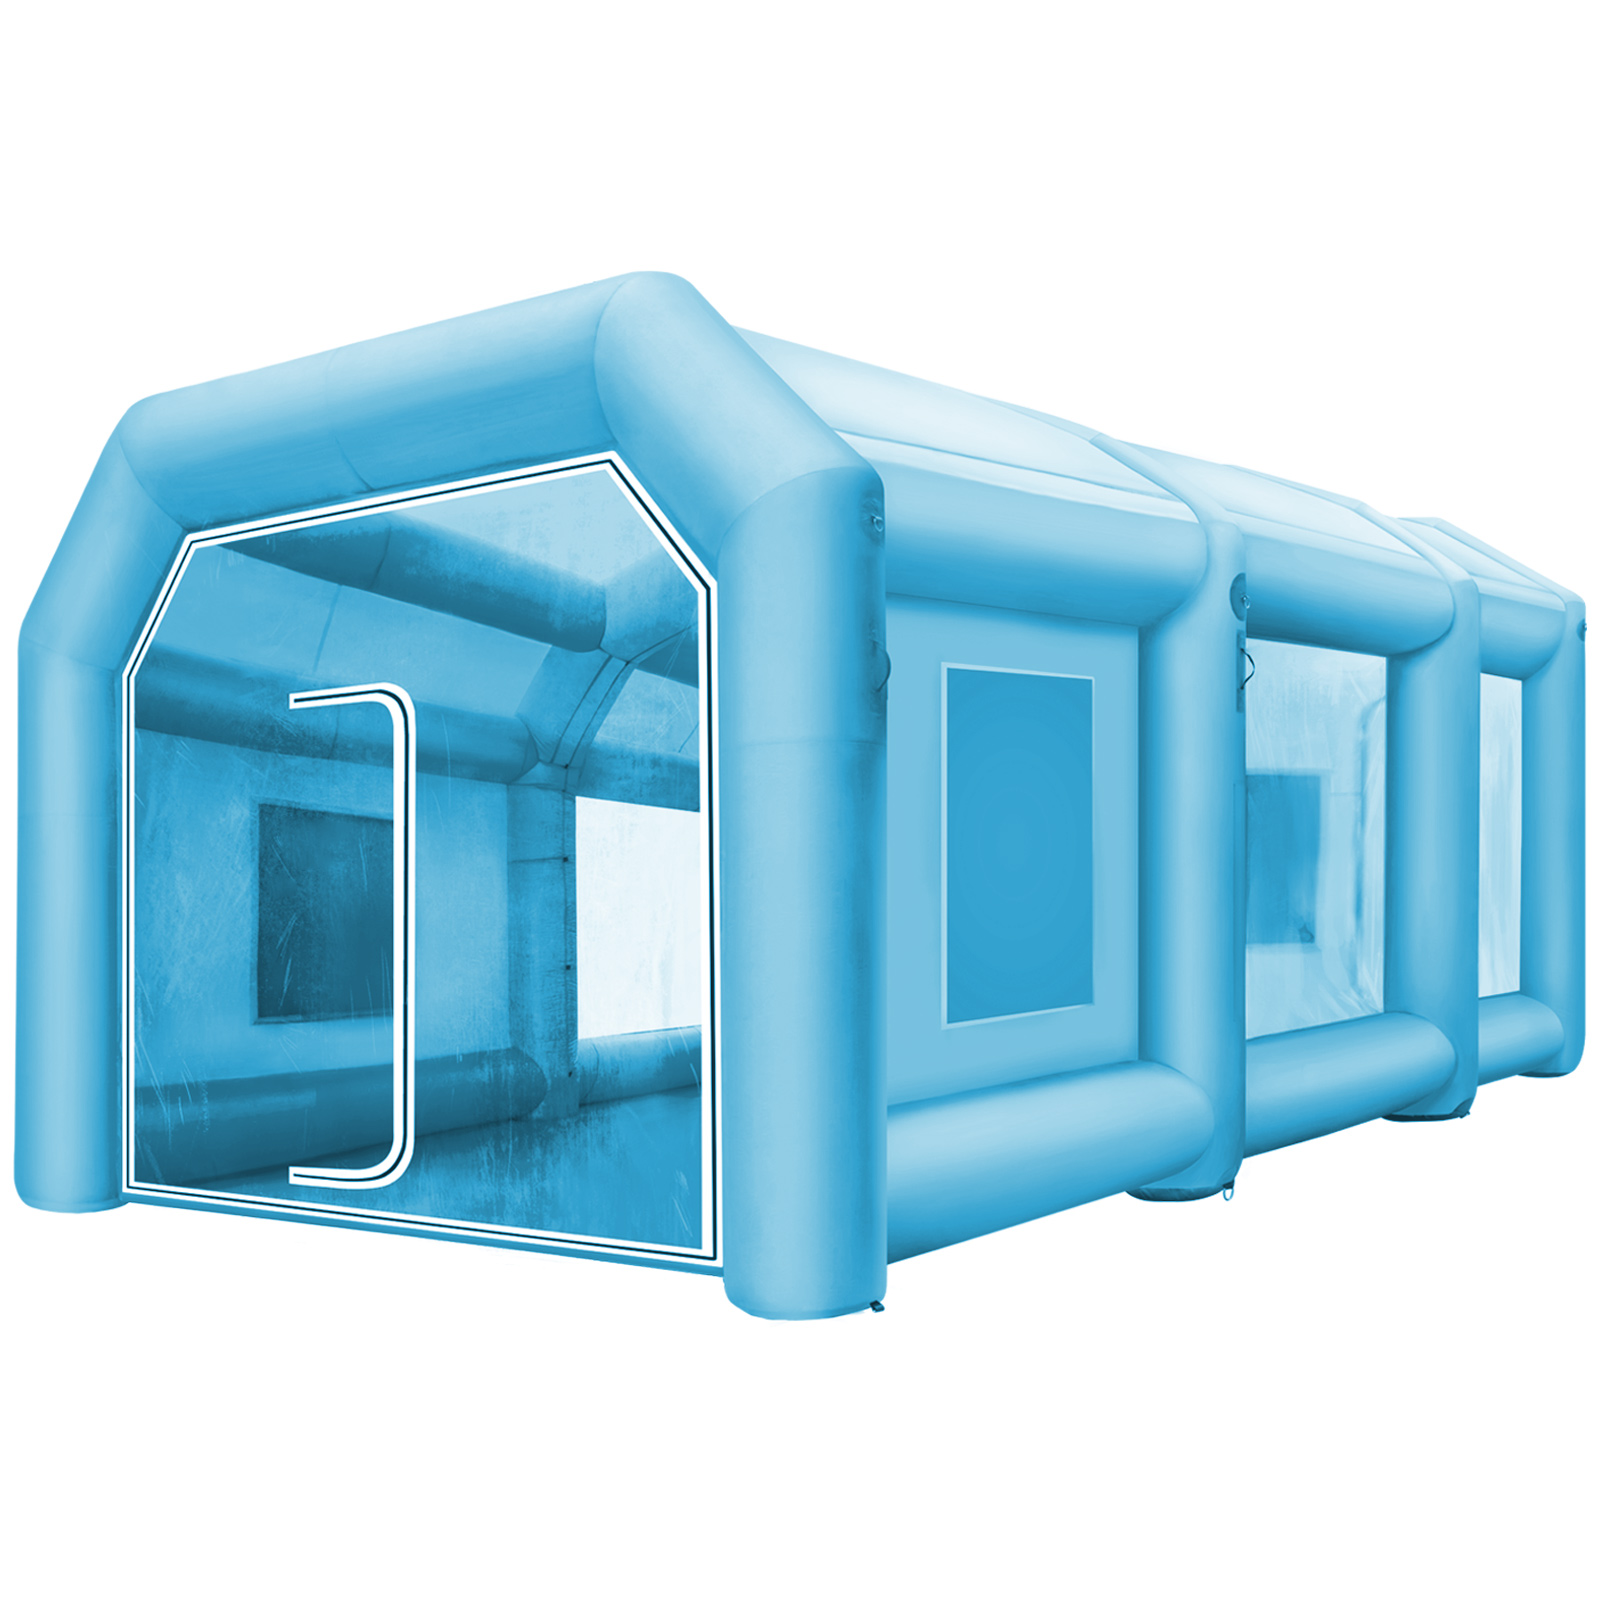 Porta inserti avvitatore (3D) blu